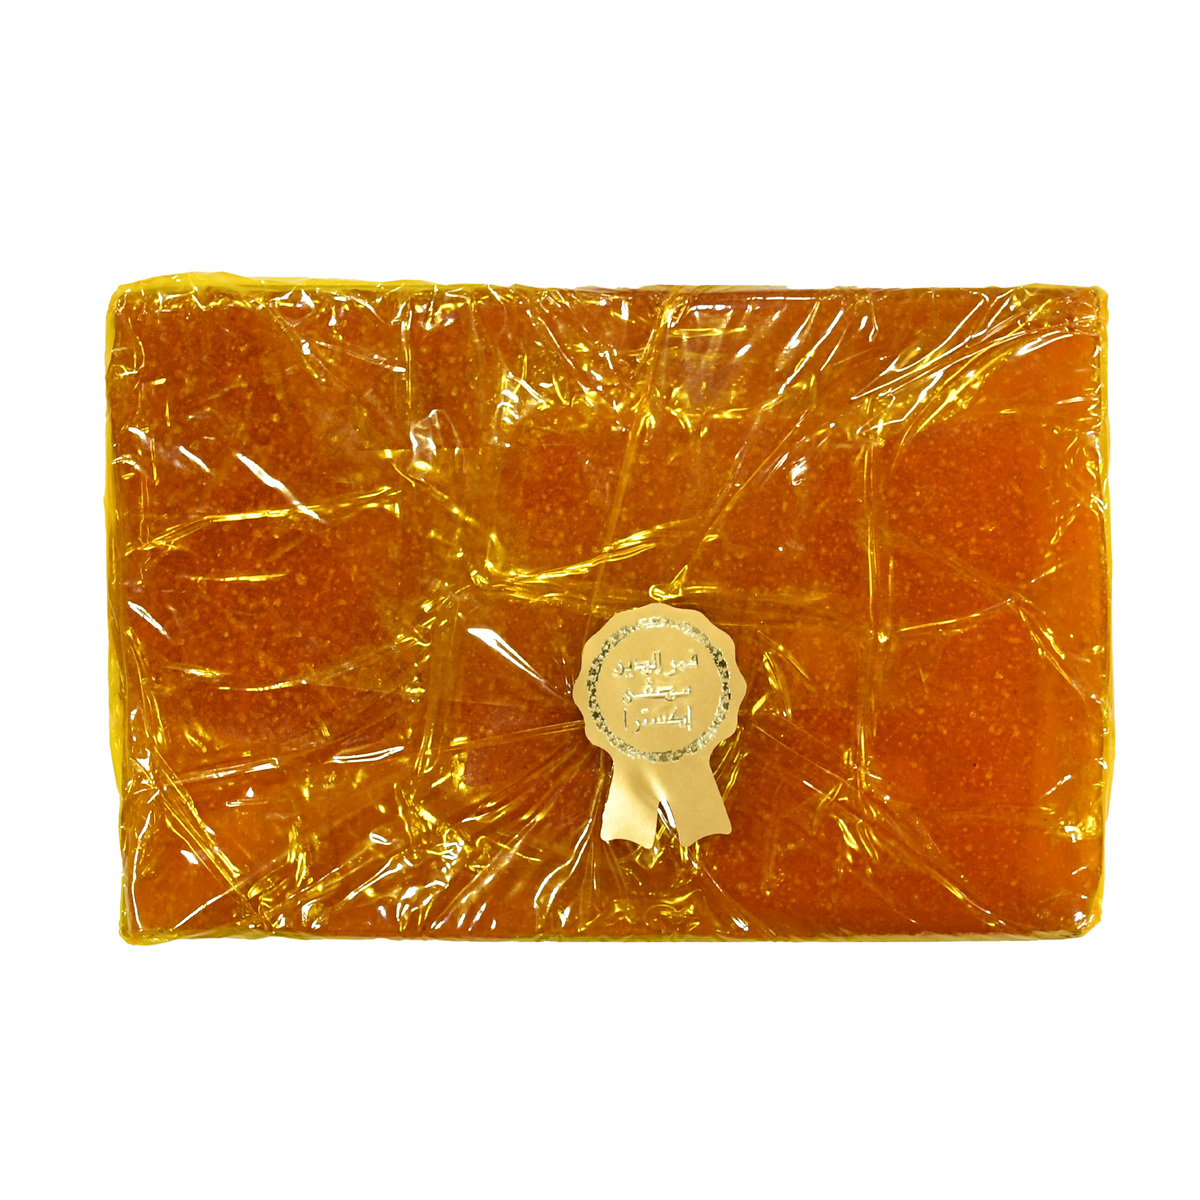 Mujeza Kamarudheen Dried Apricot Paste 400 g